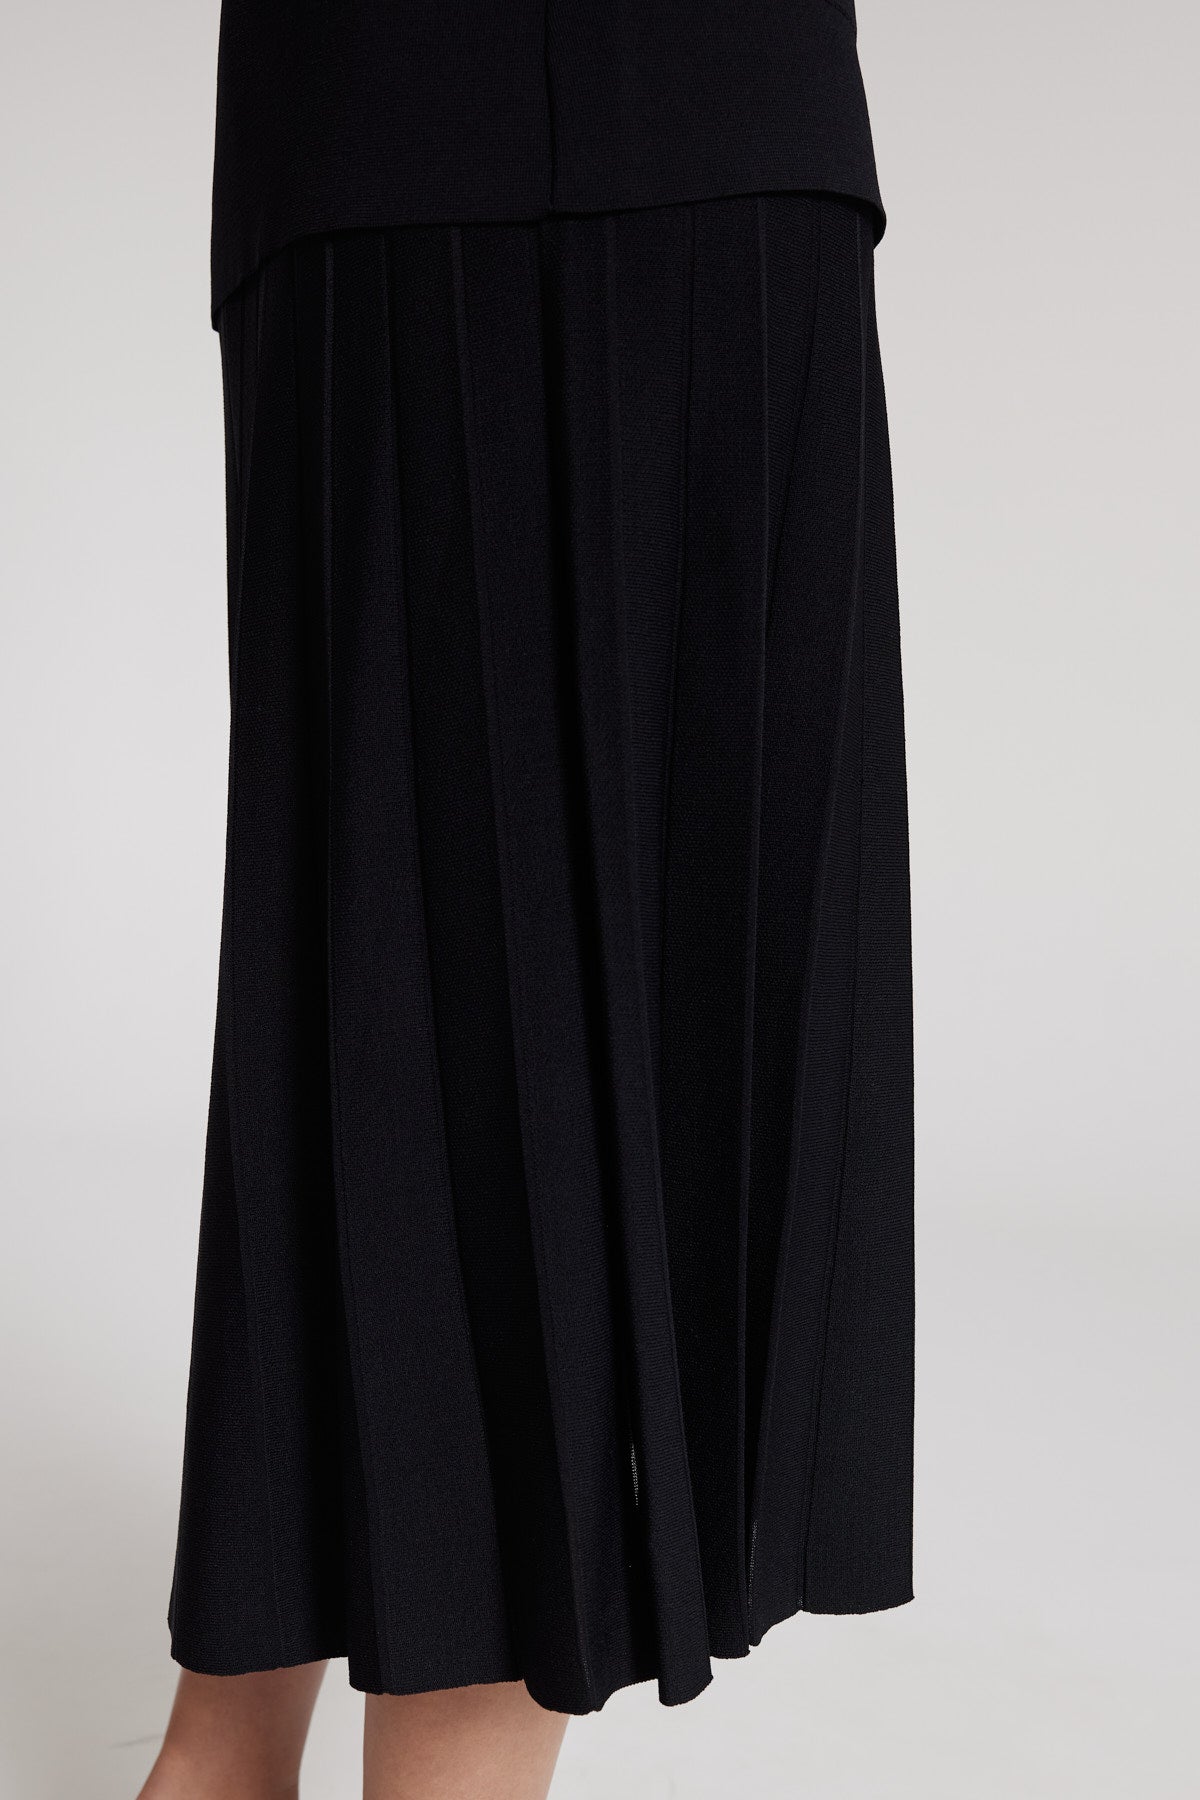 Crepe Pleat Knit Skirt - Black-Perri Cutten